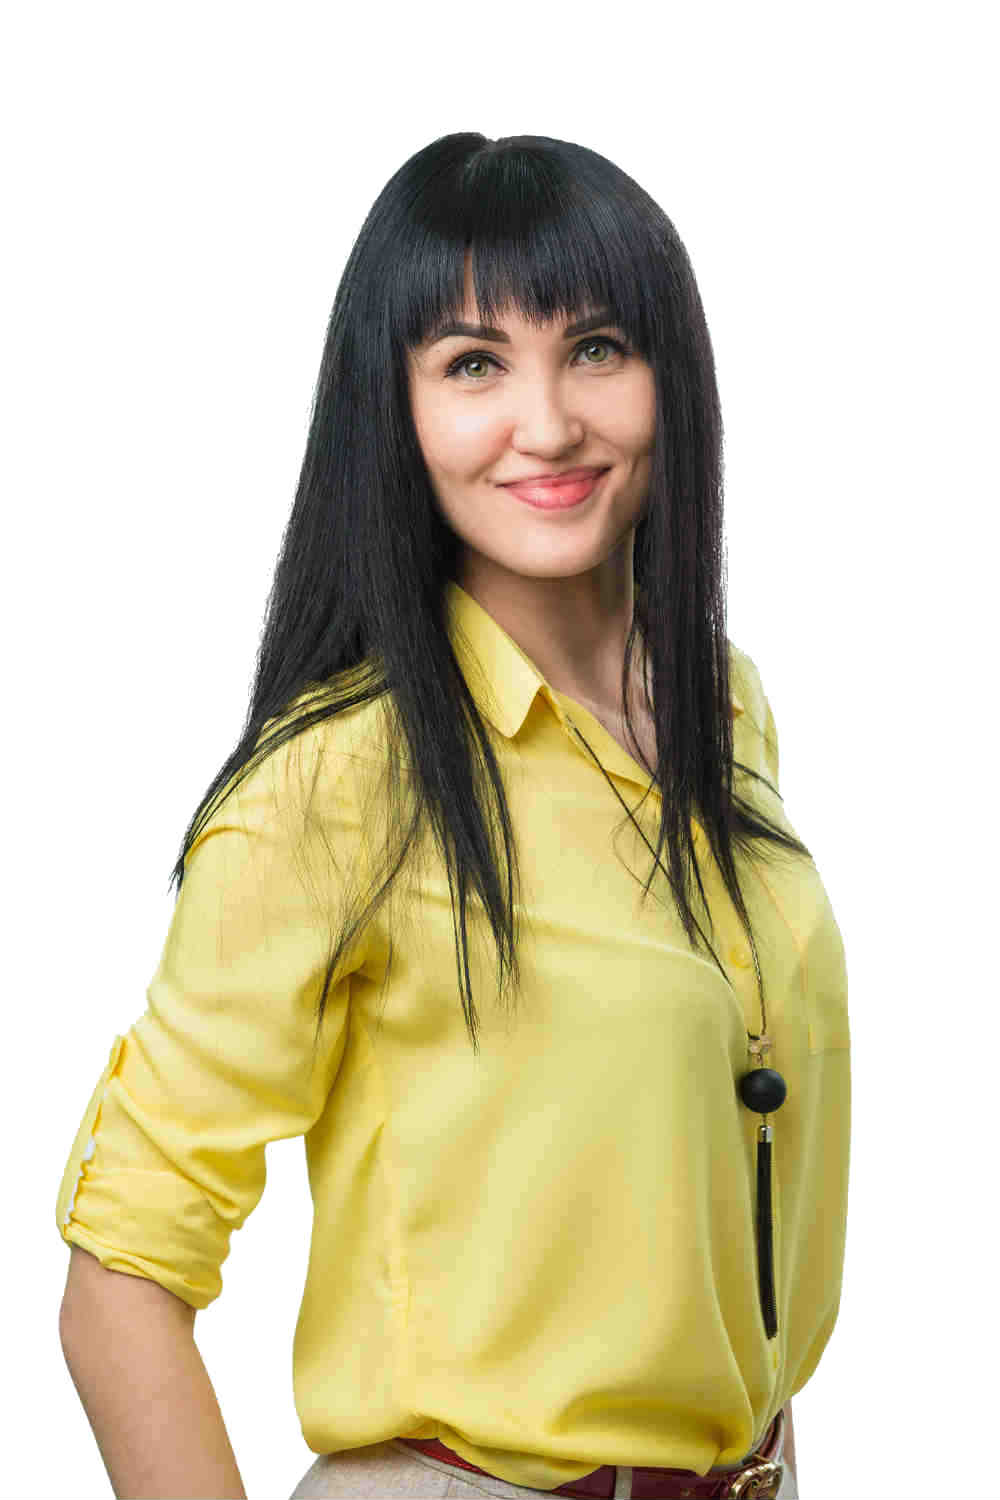 Гузева Людмила Николаевна